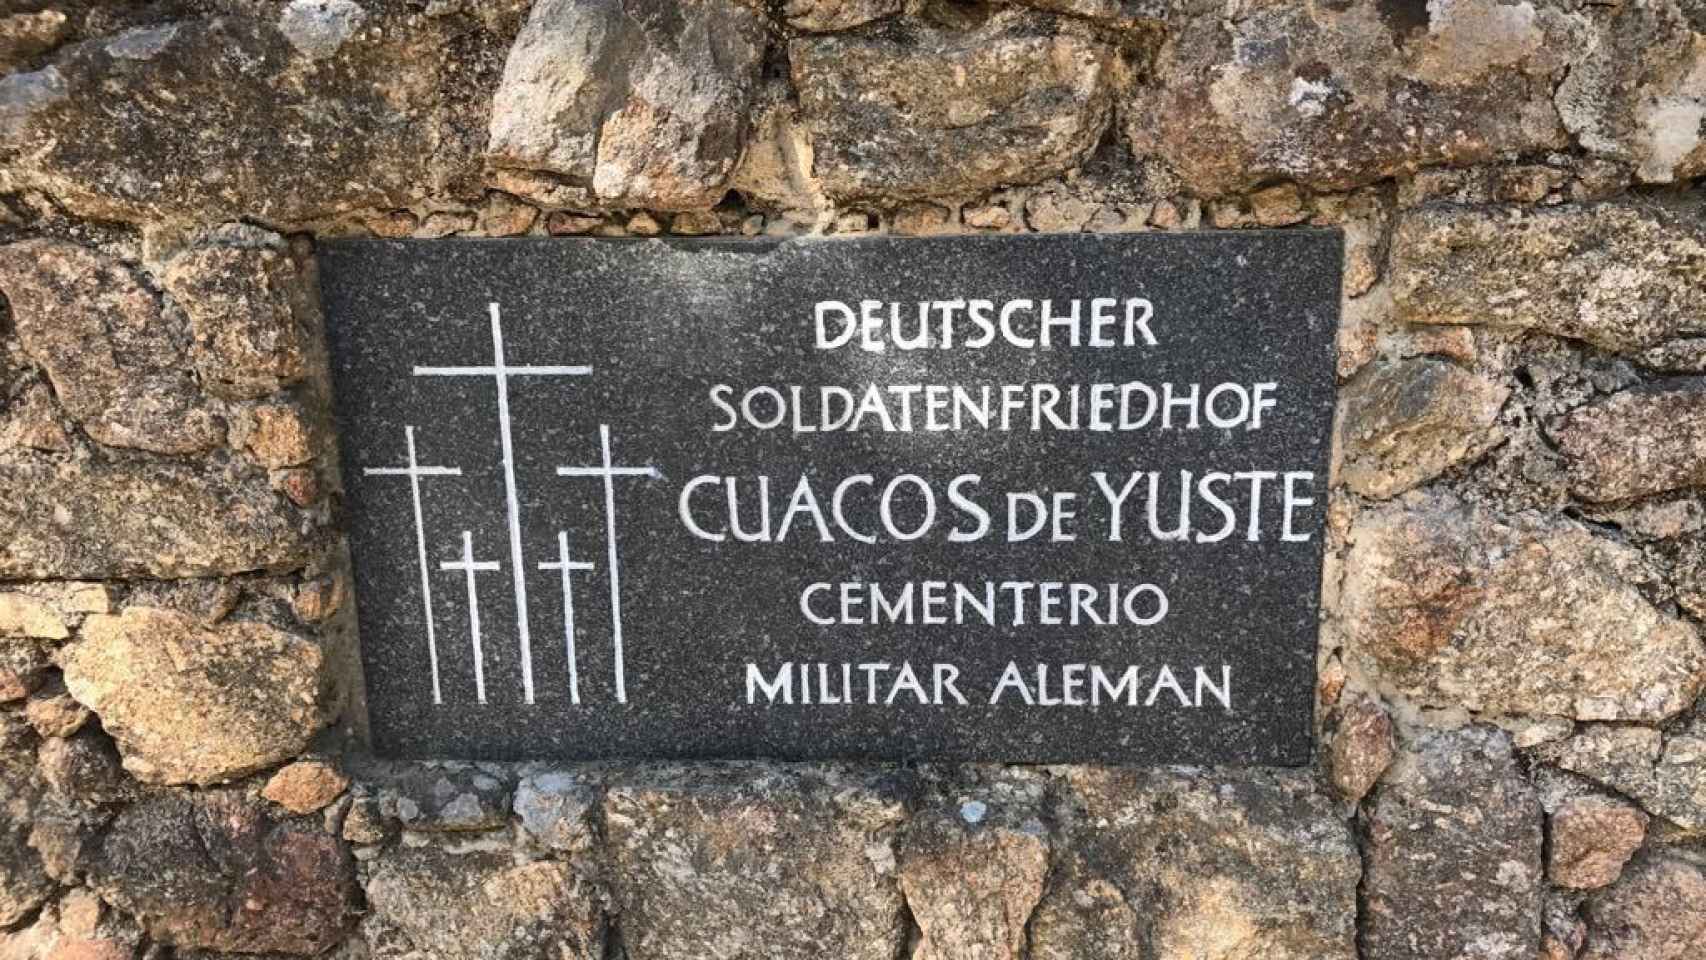 Cartel a la entrada del cementerio de Cuacos de Yuste.